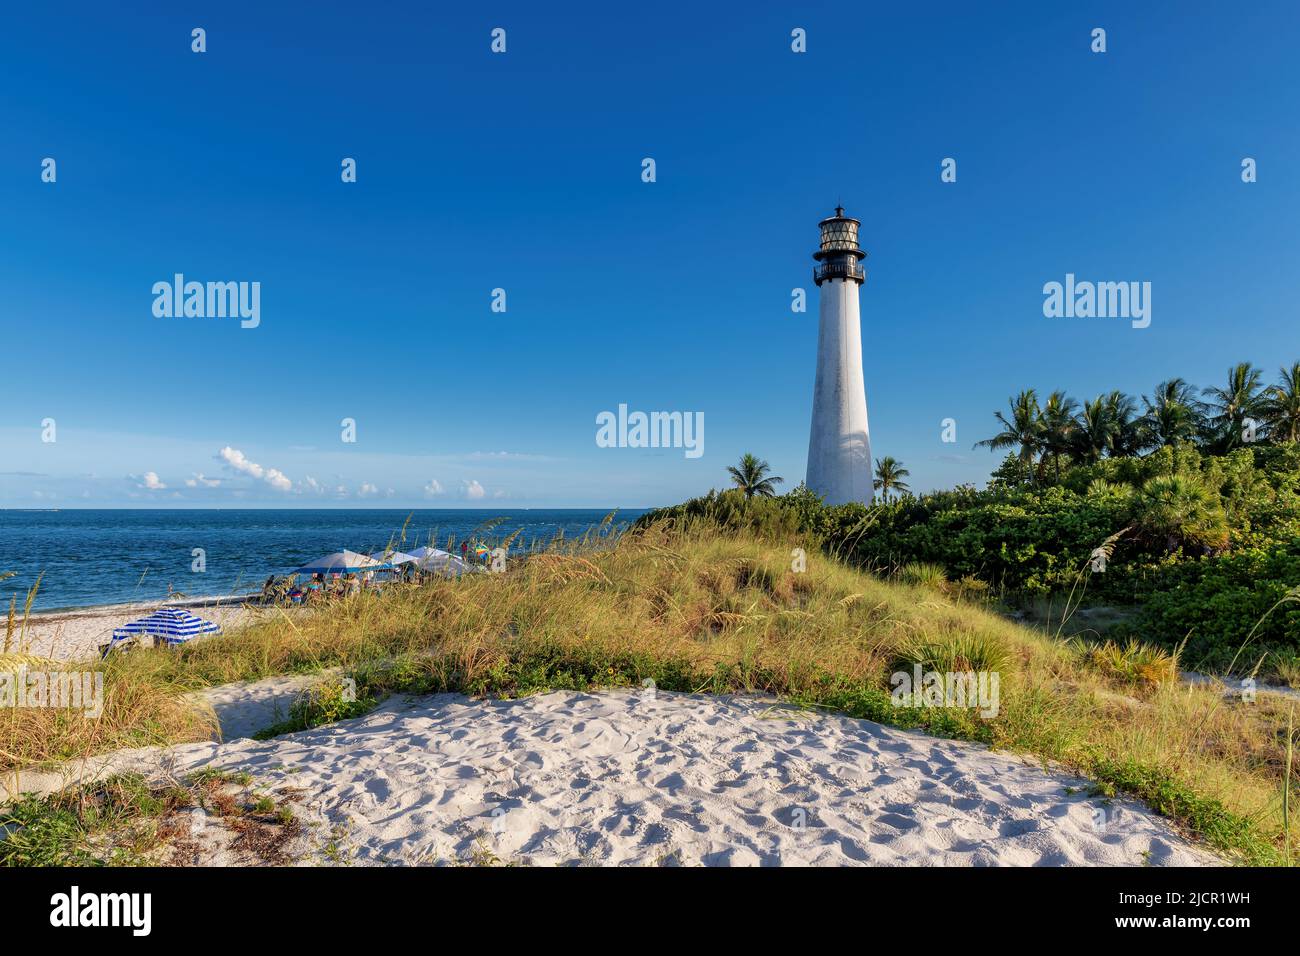 Belle plage et phare de Cape Florida, Key Biscayne, Miami, Floride, États-Unis Banque D'Images